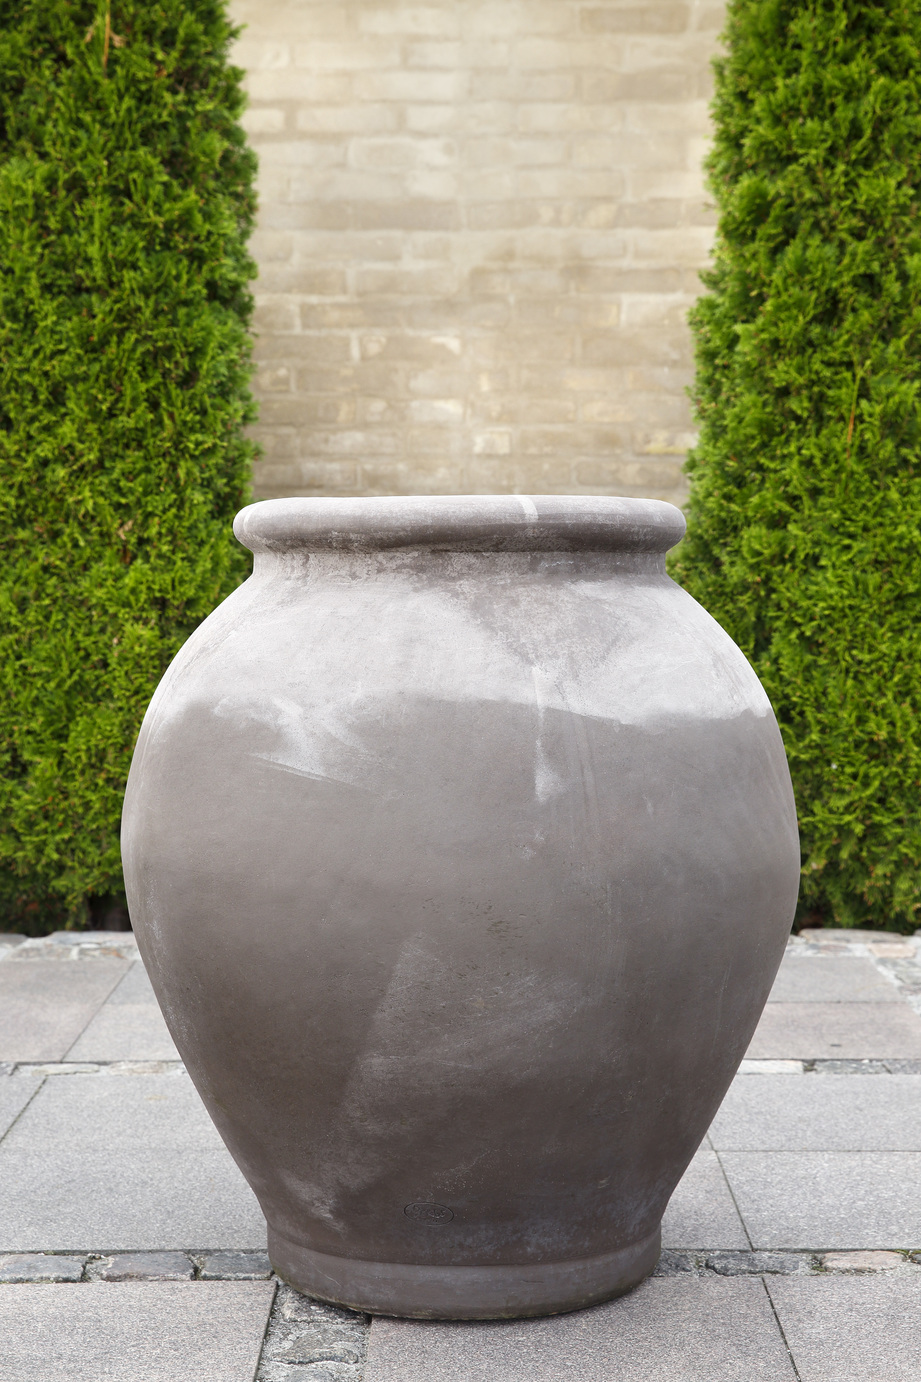 Large grey amphora-shaped outdoor pot.